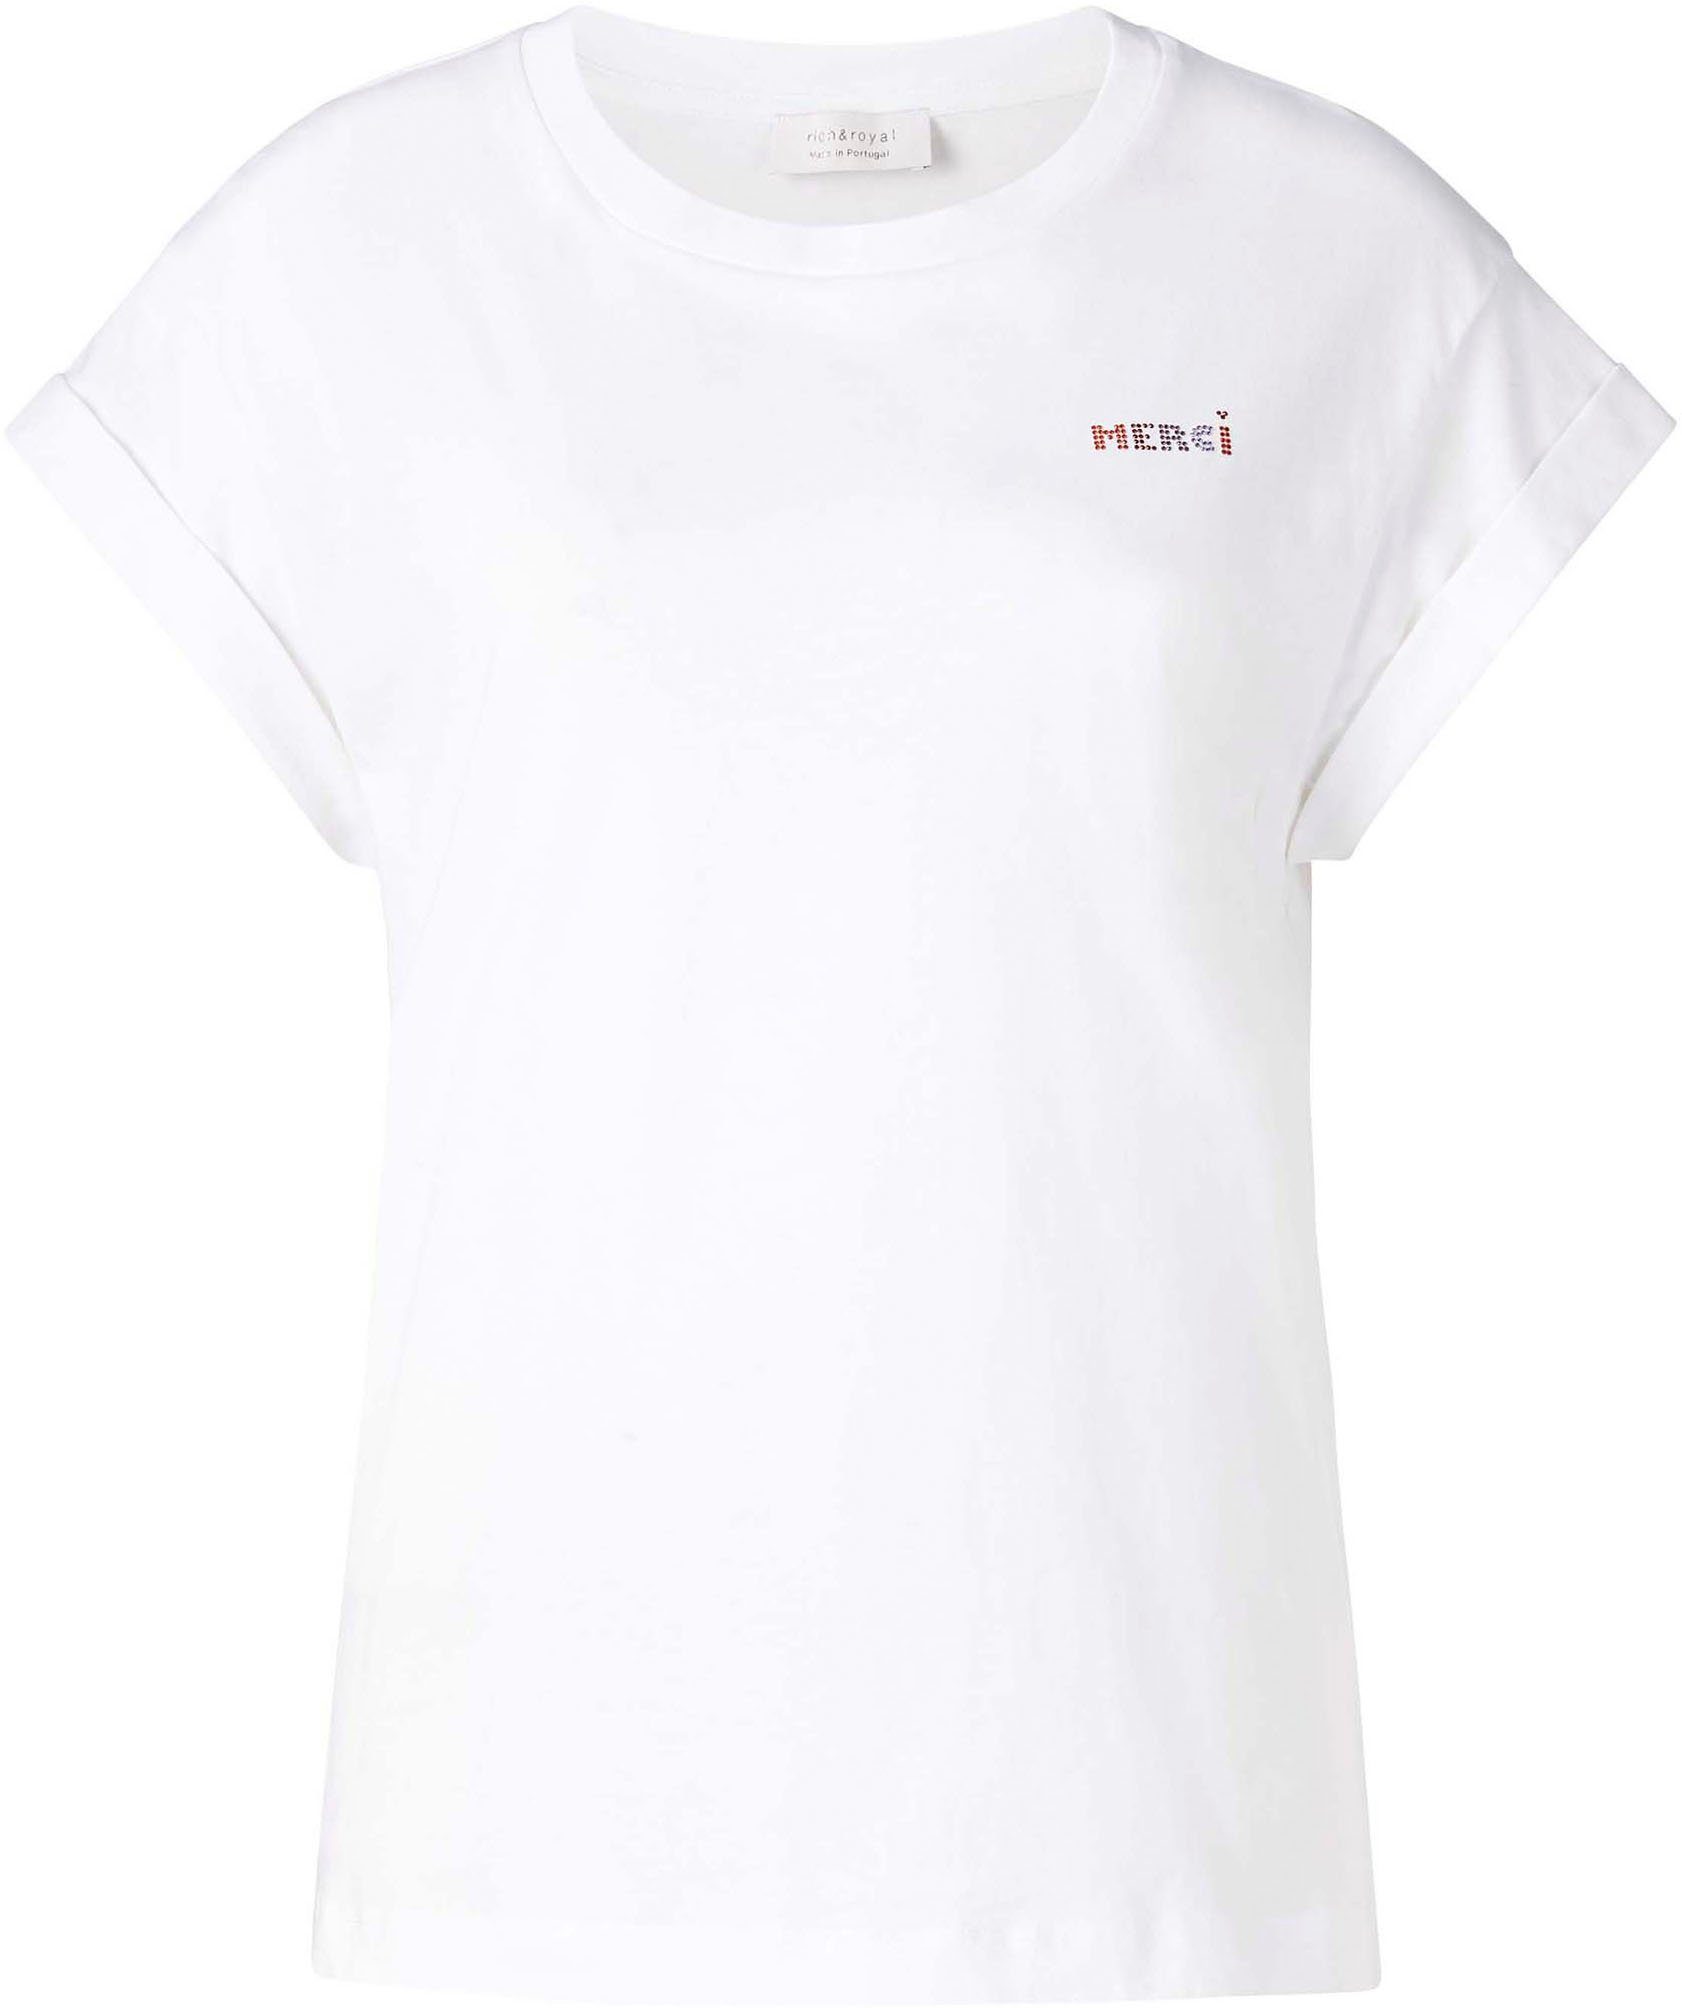 Rich & Royal T-Shirt in mit Glitzer-Print Brusthöhe original weiß